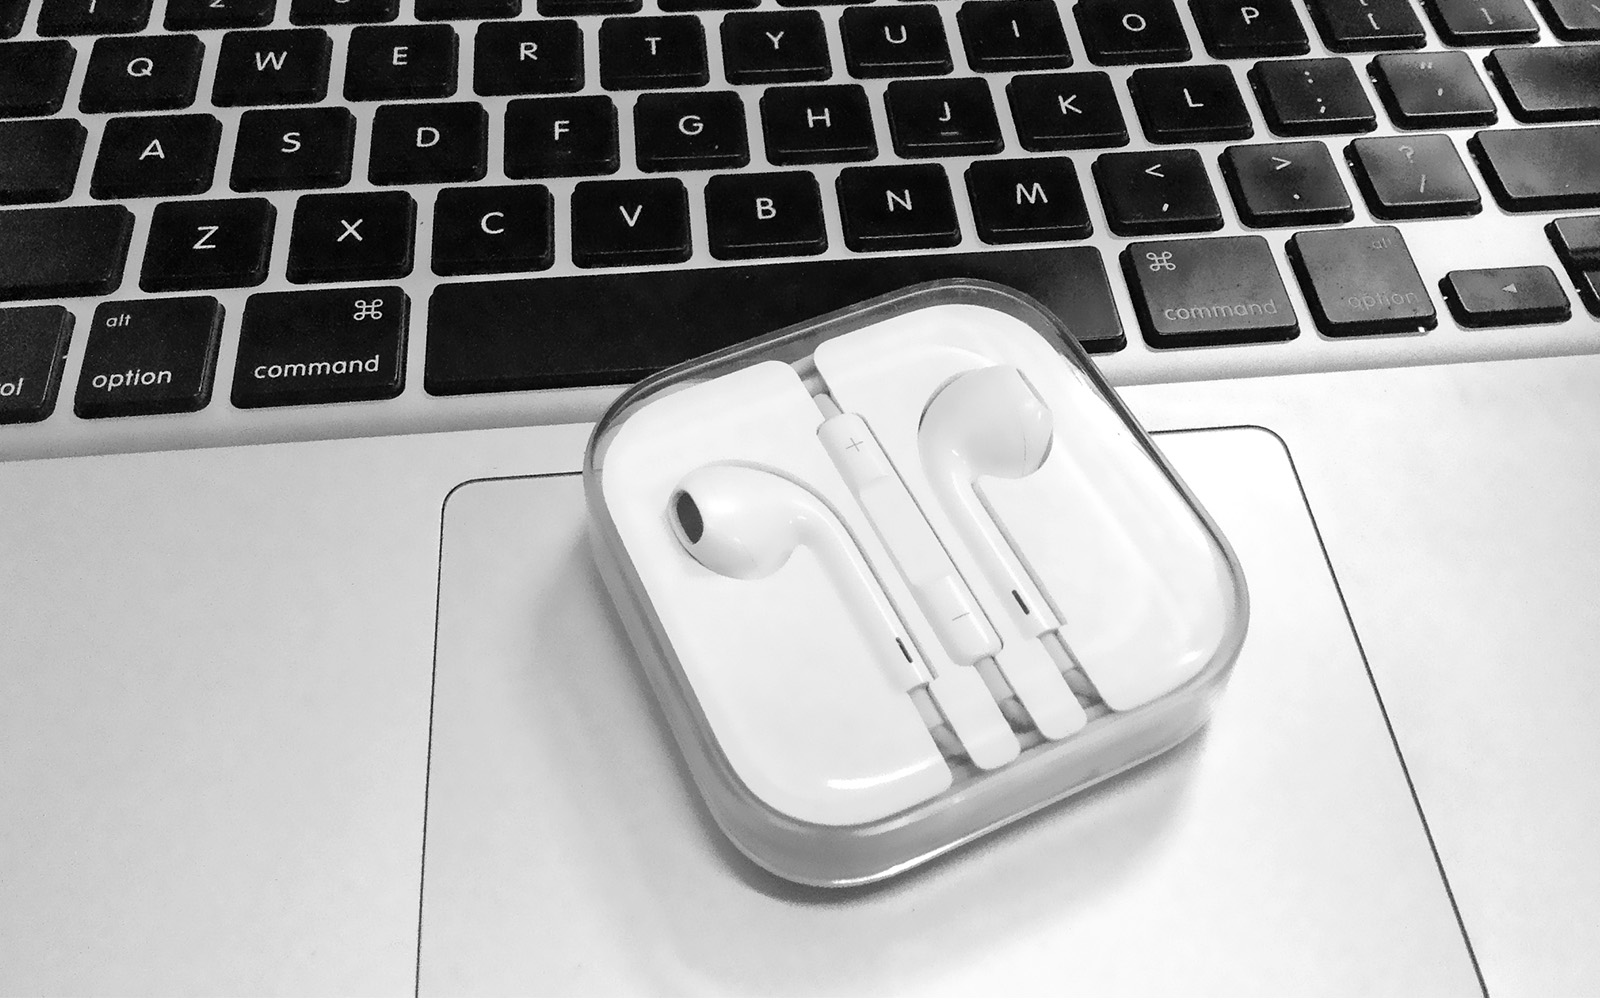 ไว้เจอกัน! Apple จดสิทธิบัตรหูฟัง Earbud ไร้สายพร้อมฟีเจอร์ตัดเสียงรบกวนภายนอก